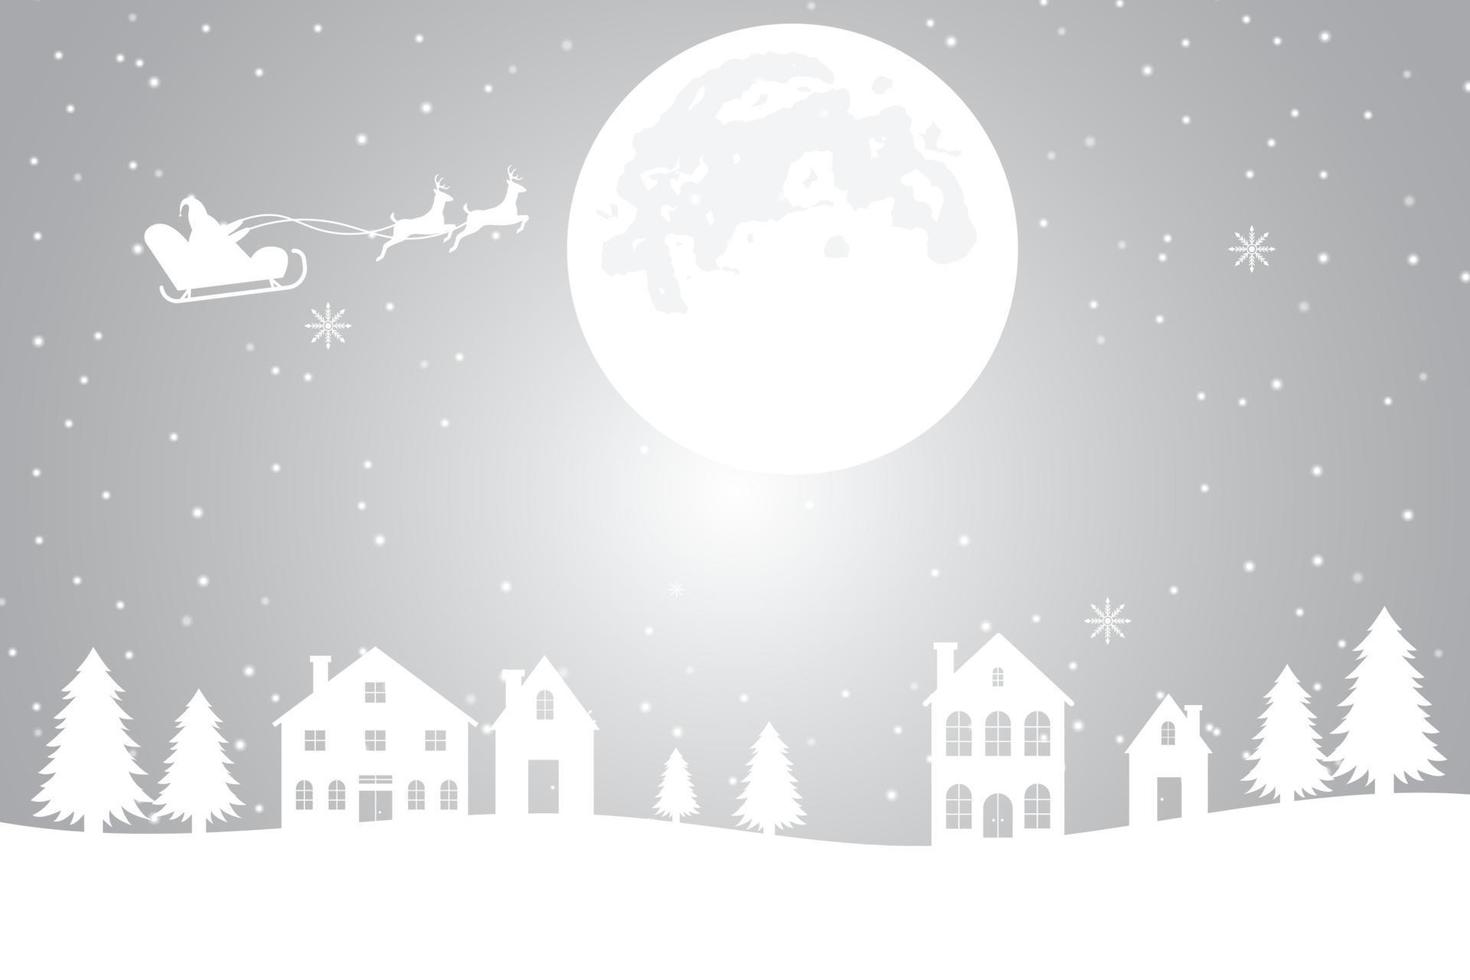 vrolijk kerstmis, winter achtergrond met besneeuwd bomen en sneeuw, illustratie vector